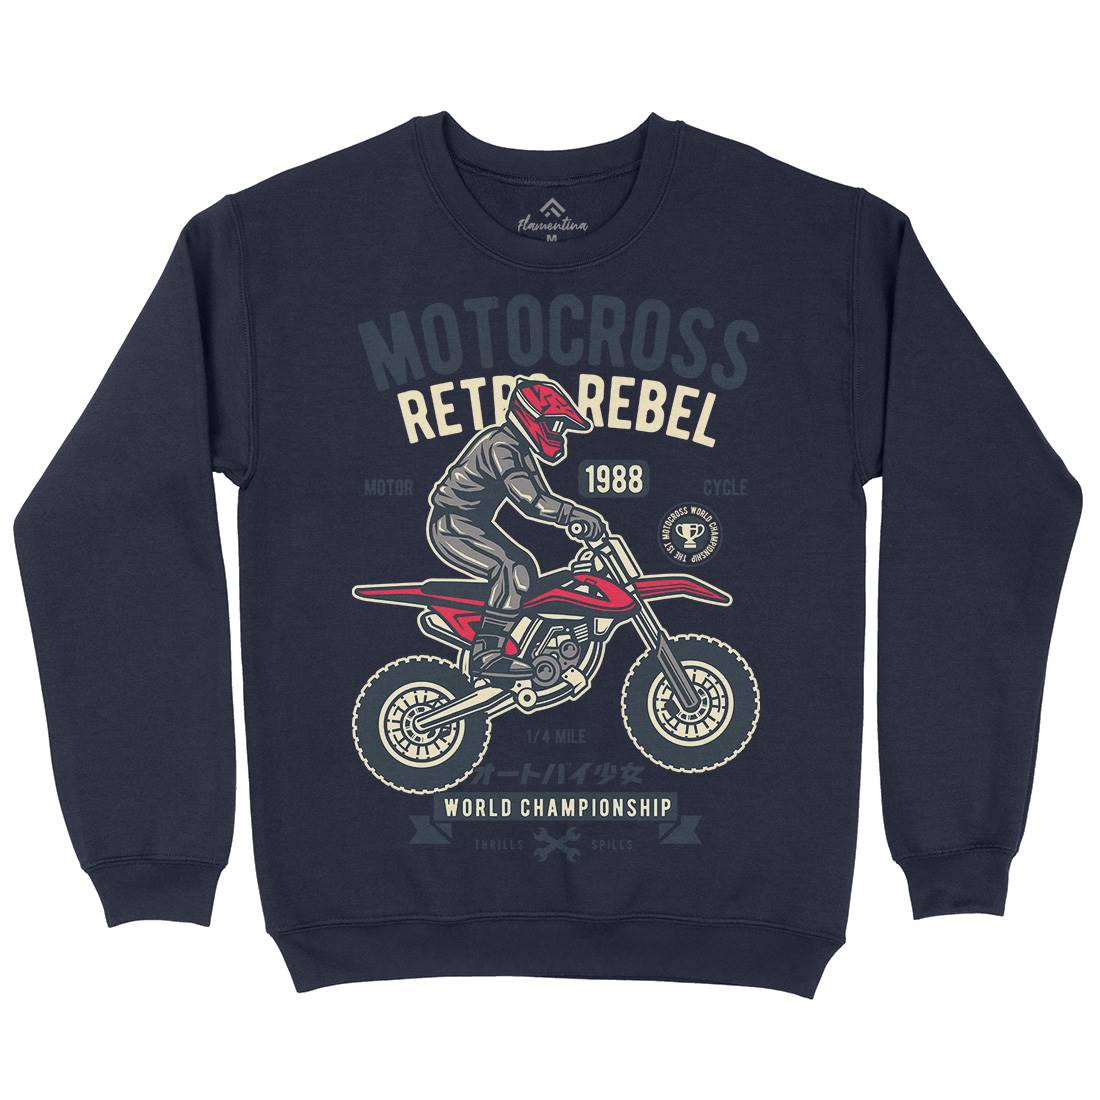 Motocross Retro Rebel Kids Crew Neck Sweatshirt Motorcycles D553